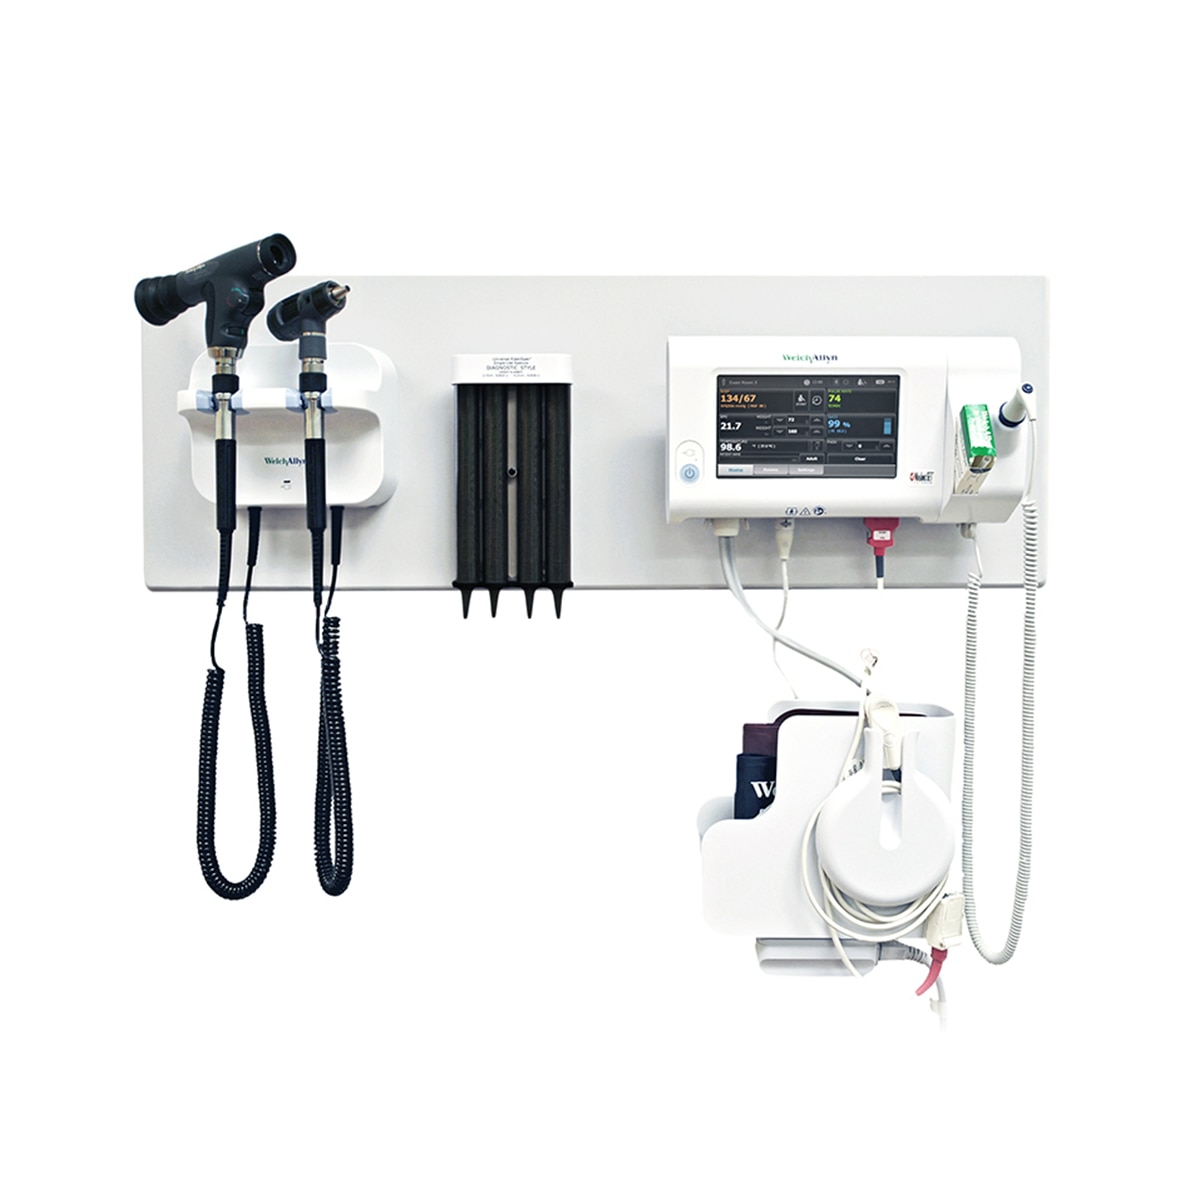 777 geïntegreerd wandsysteem met otoscoop, PanOptic-oftalmoscoop, sondehoesjes en Connex Spot-monitor voor vitale functies